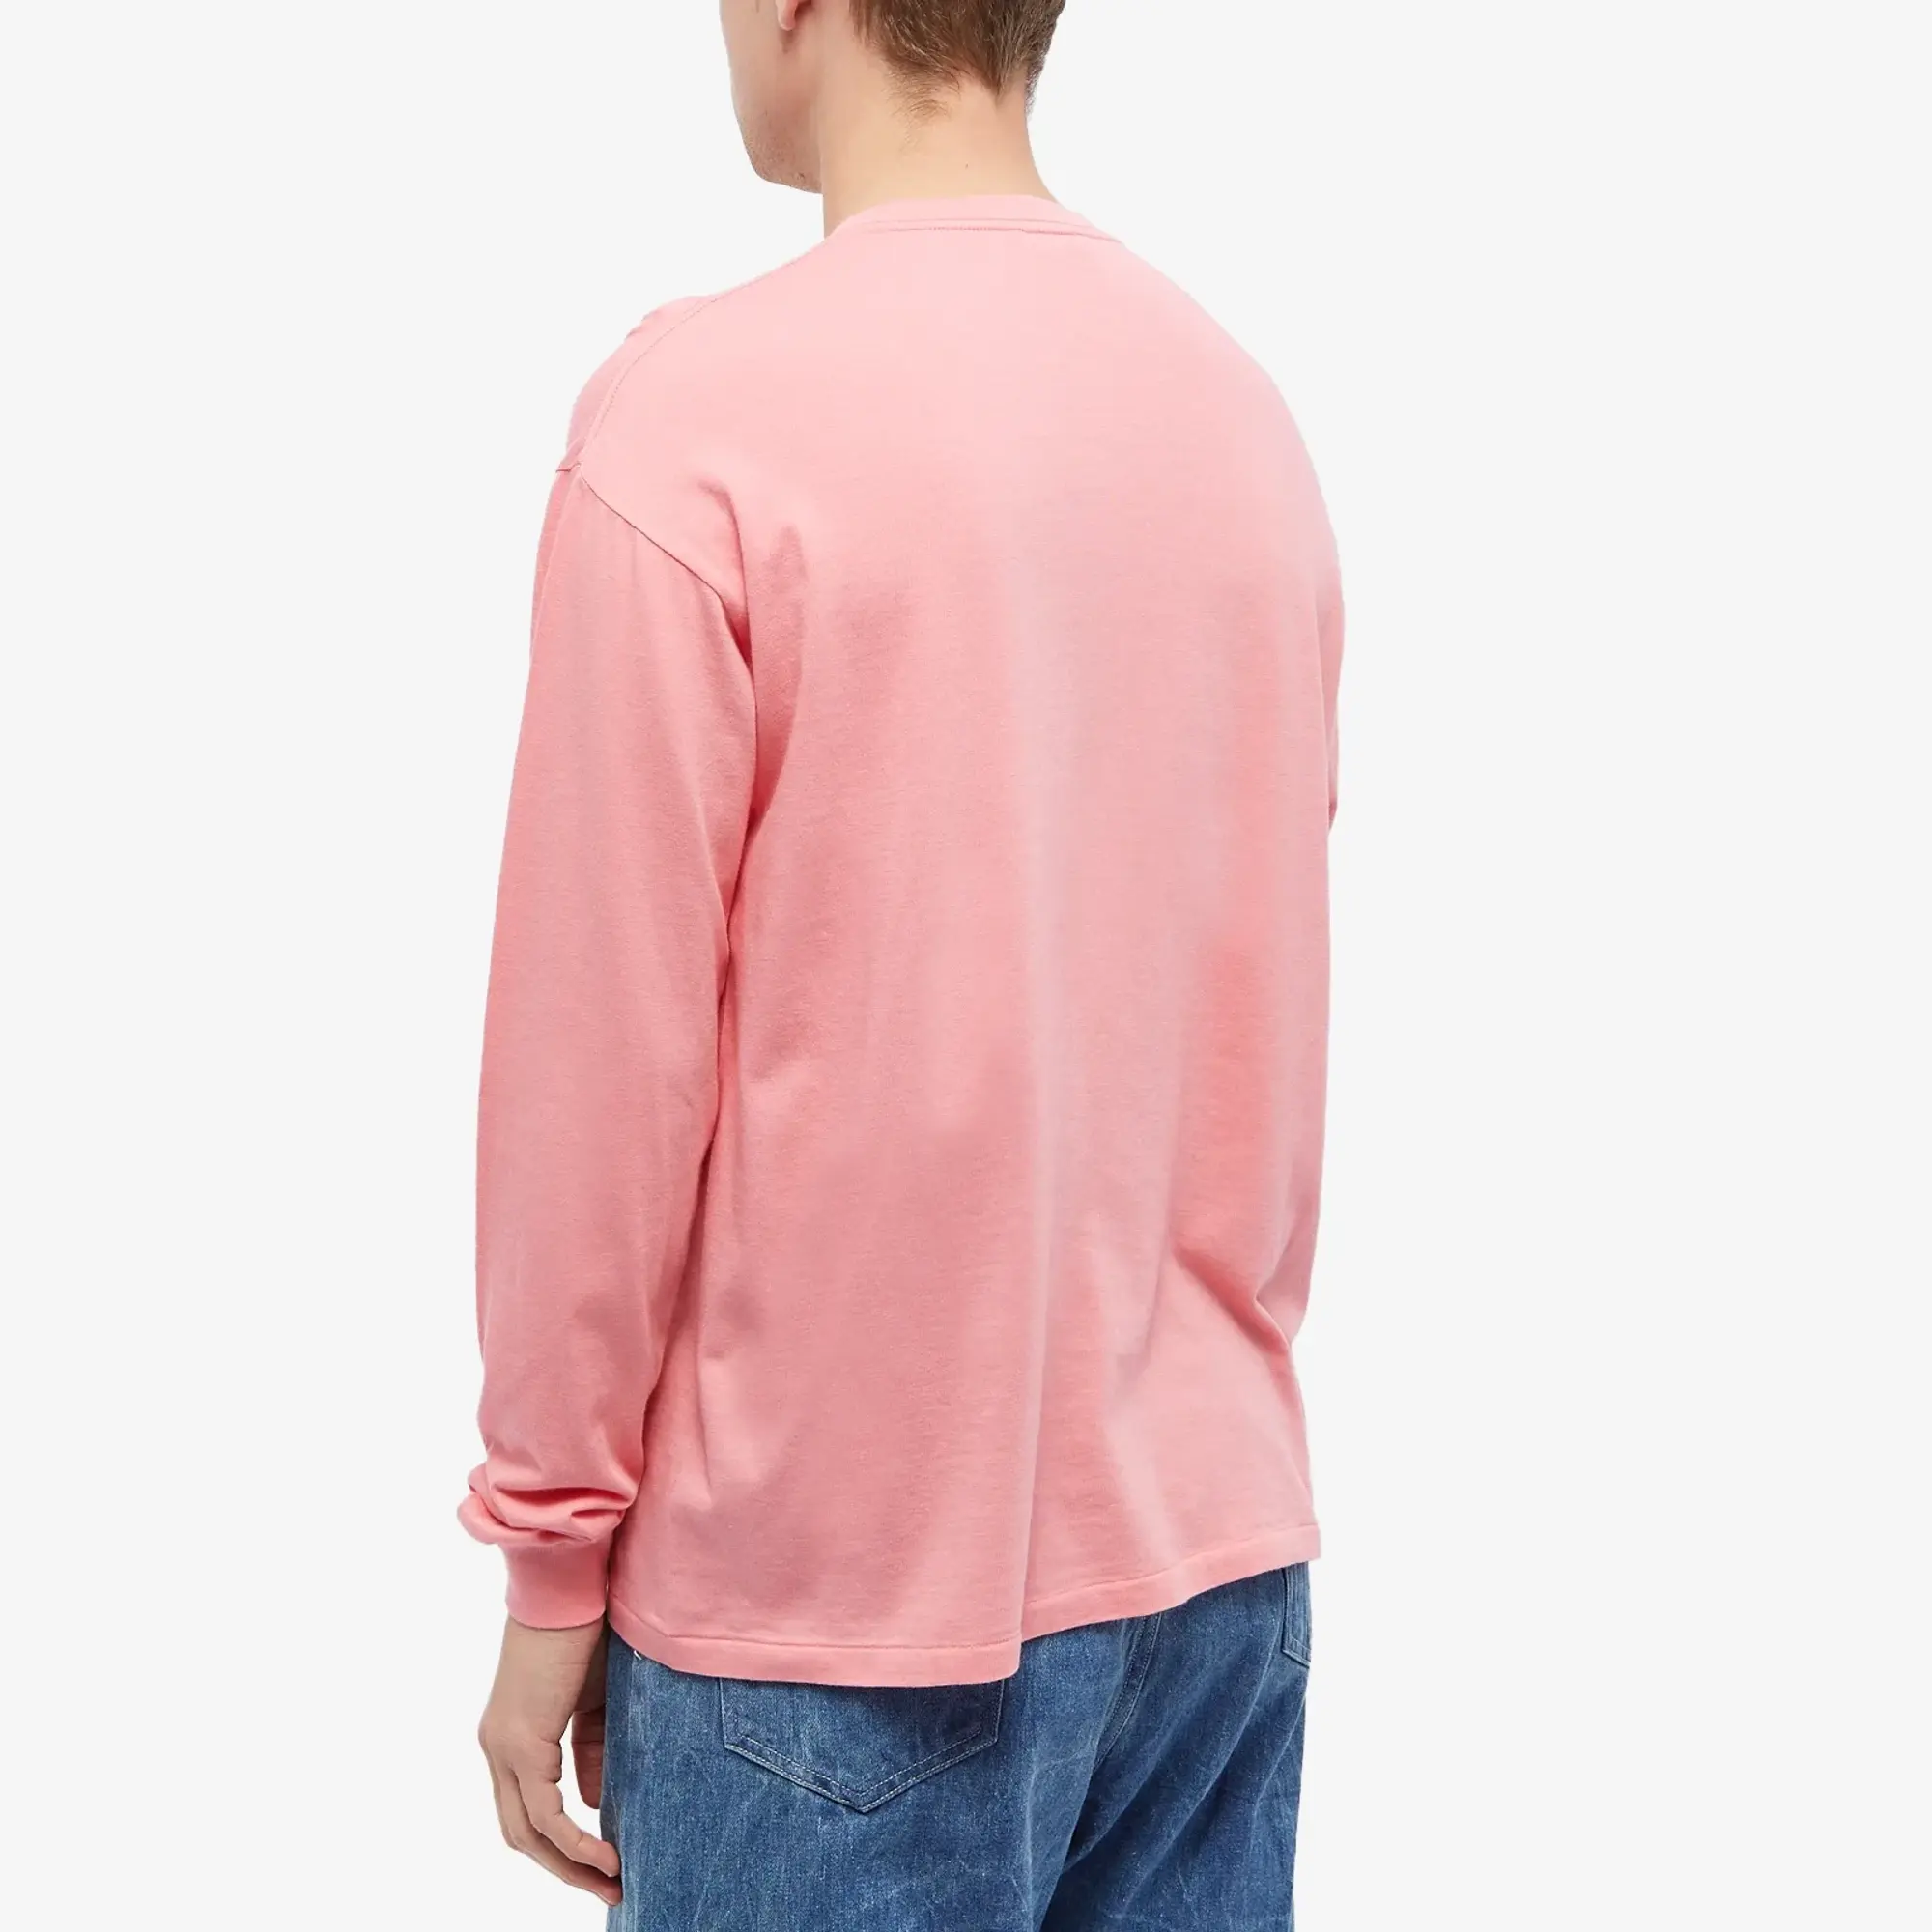 Auralee Men's Long Sleeve Seamless T-Shirt Pink